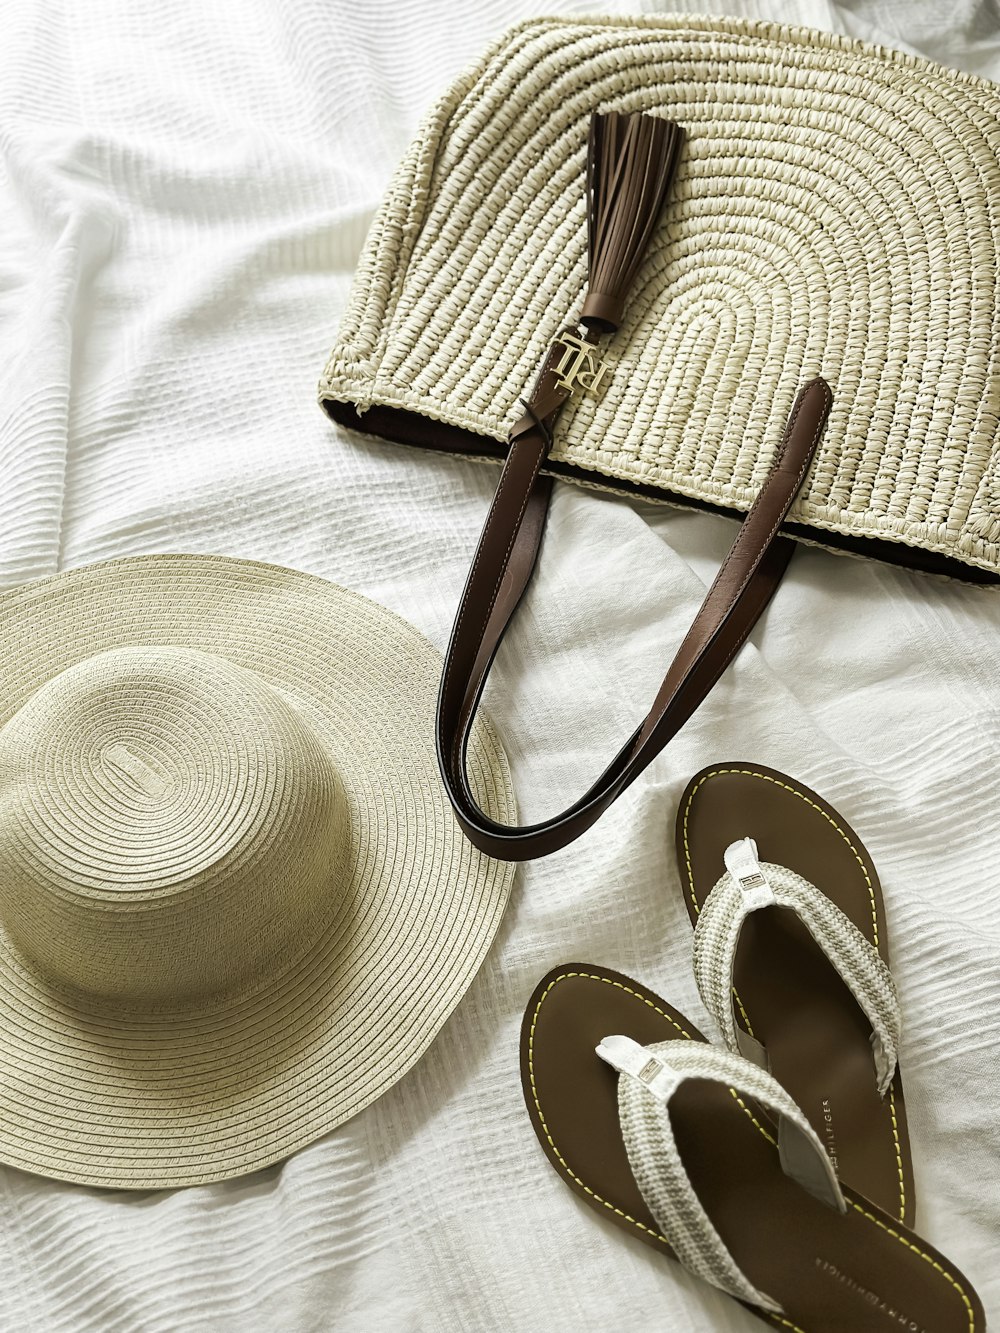 帽子、サンダル、ベッドの上の財布